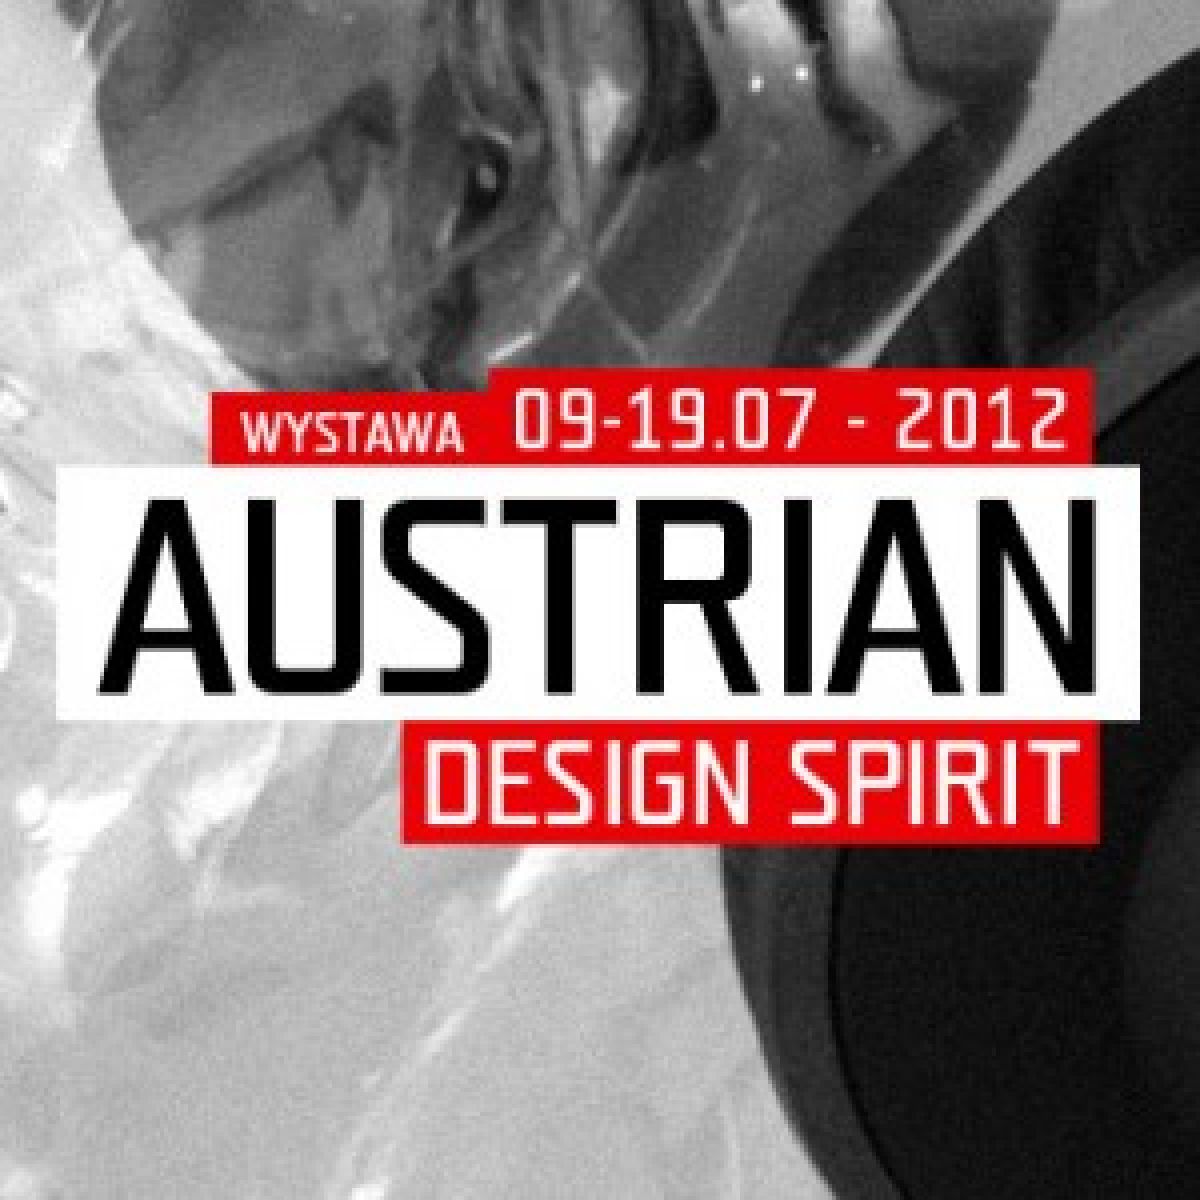 Design prosto z Austrii na wystawie „Austrian Design Spirit. Twórcze podejście i ekonomiczne aspekty'' w Poznaniu